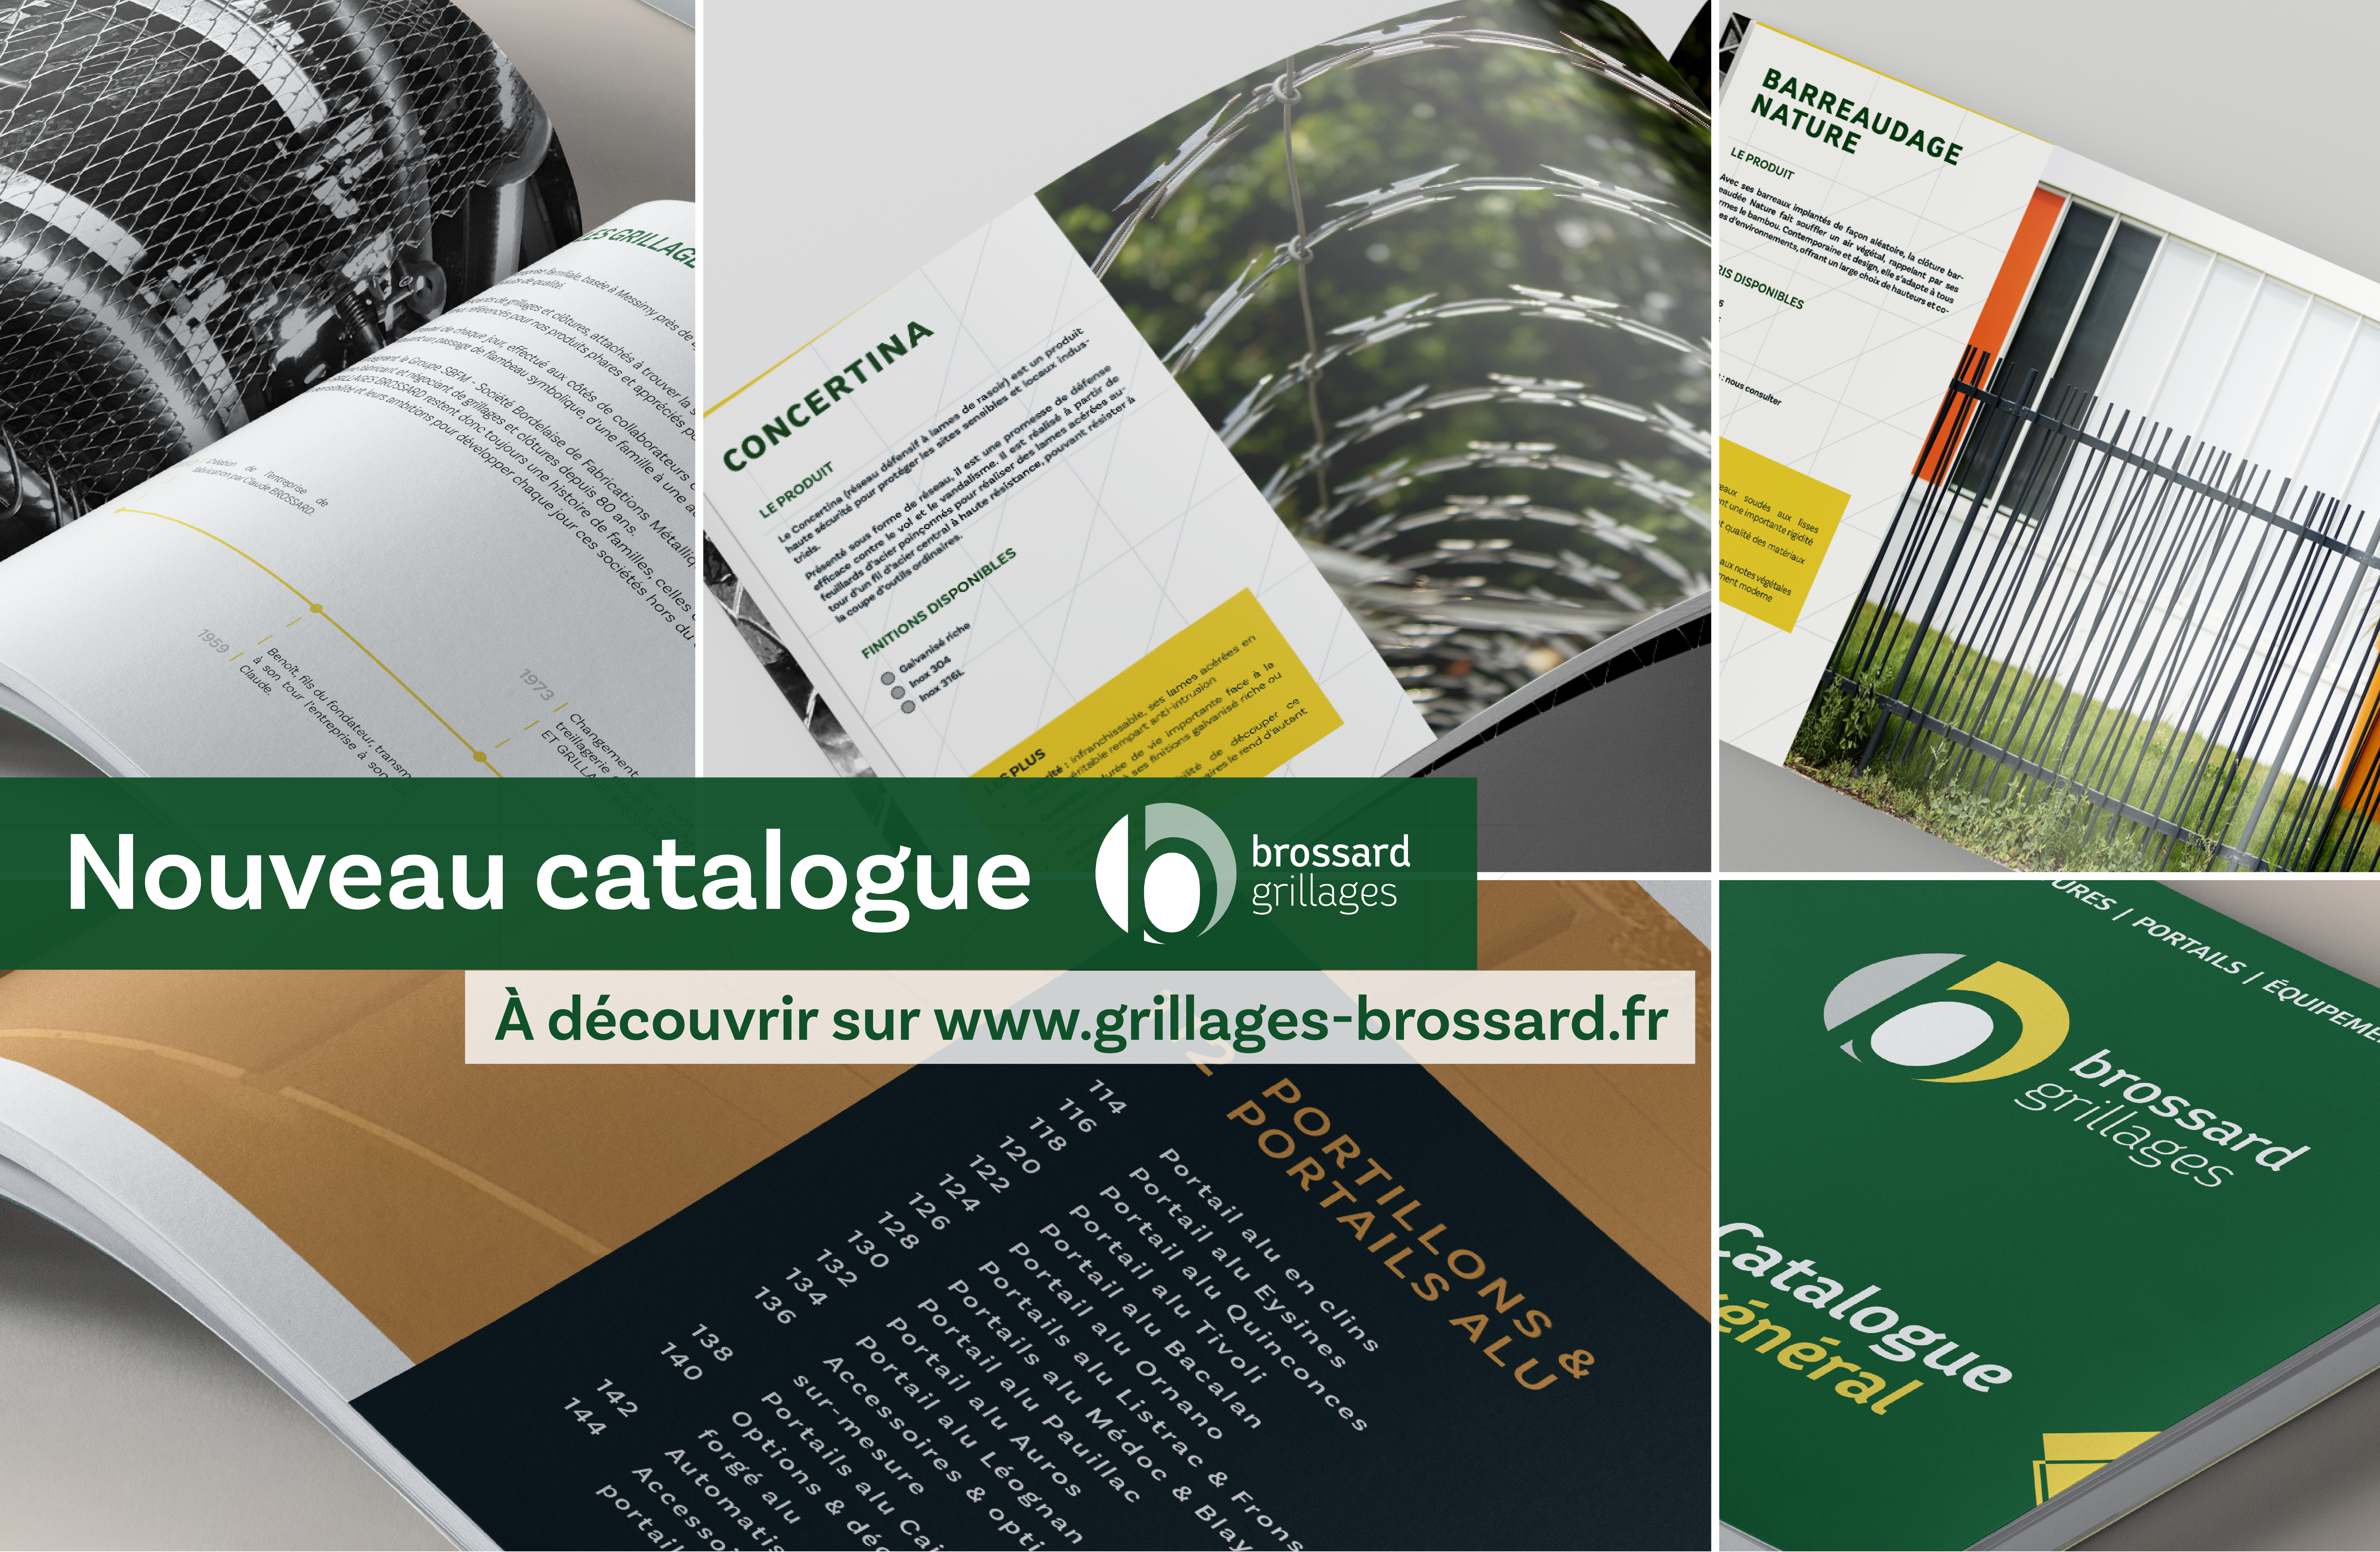 Nouveau catalogue – Grillages Brossard